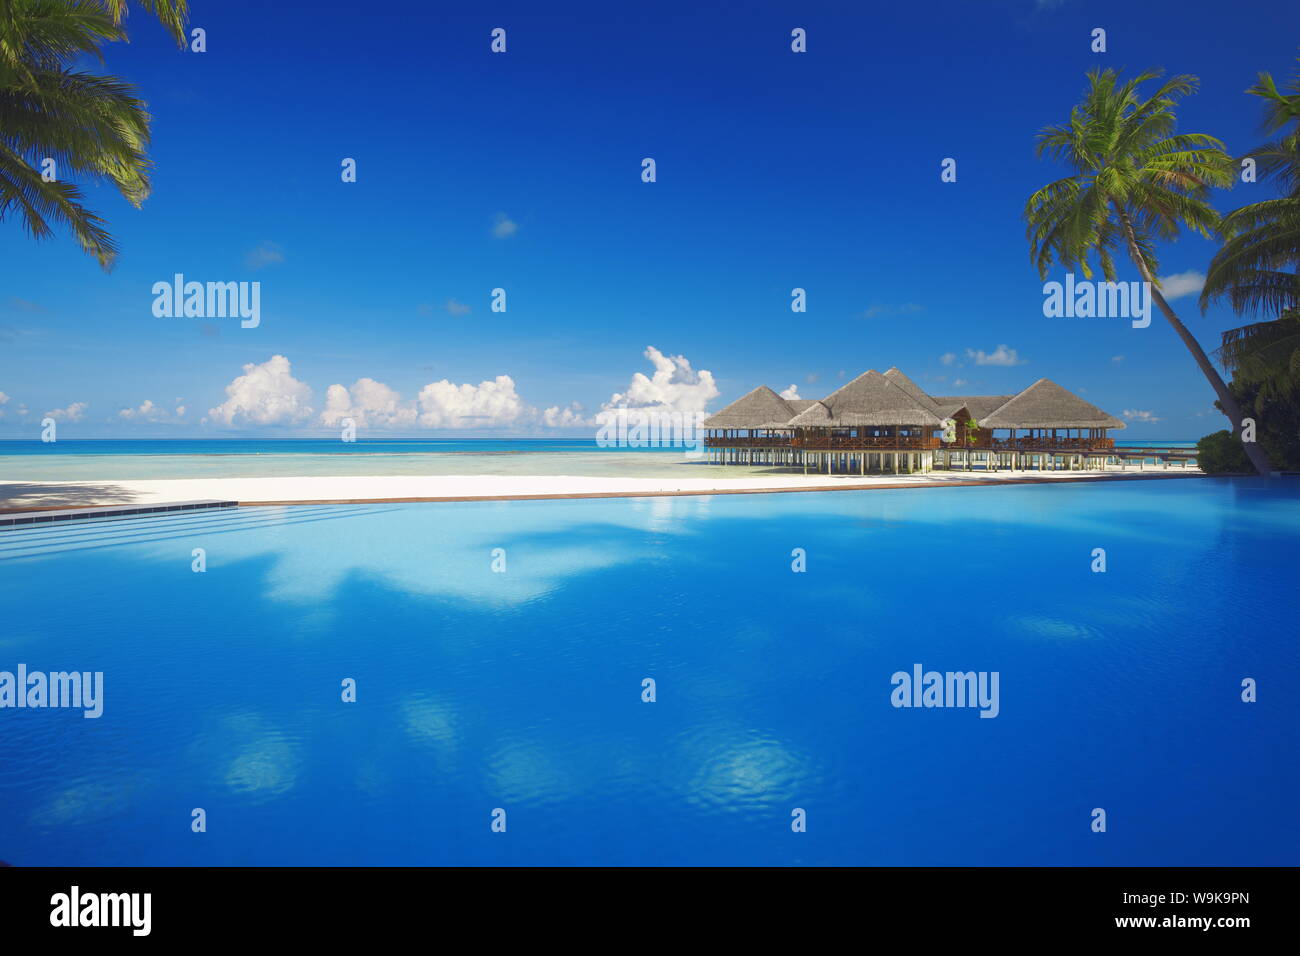 Piscina, palme e cabine, Maldive, Oceano Indiano, Asia Foto Stock